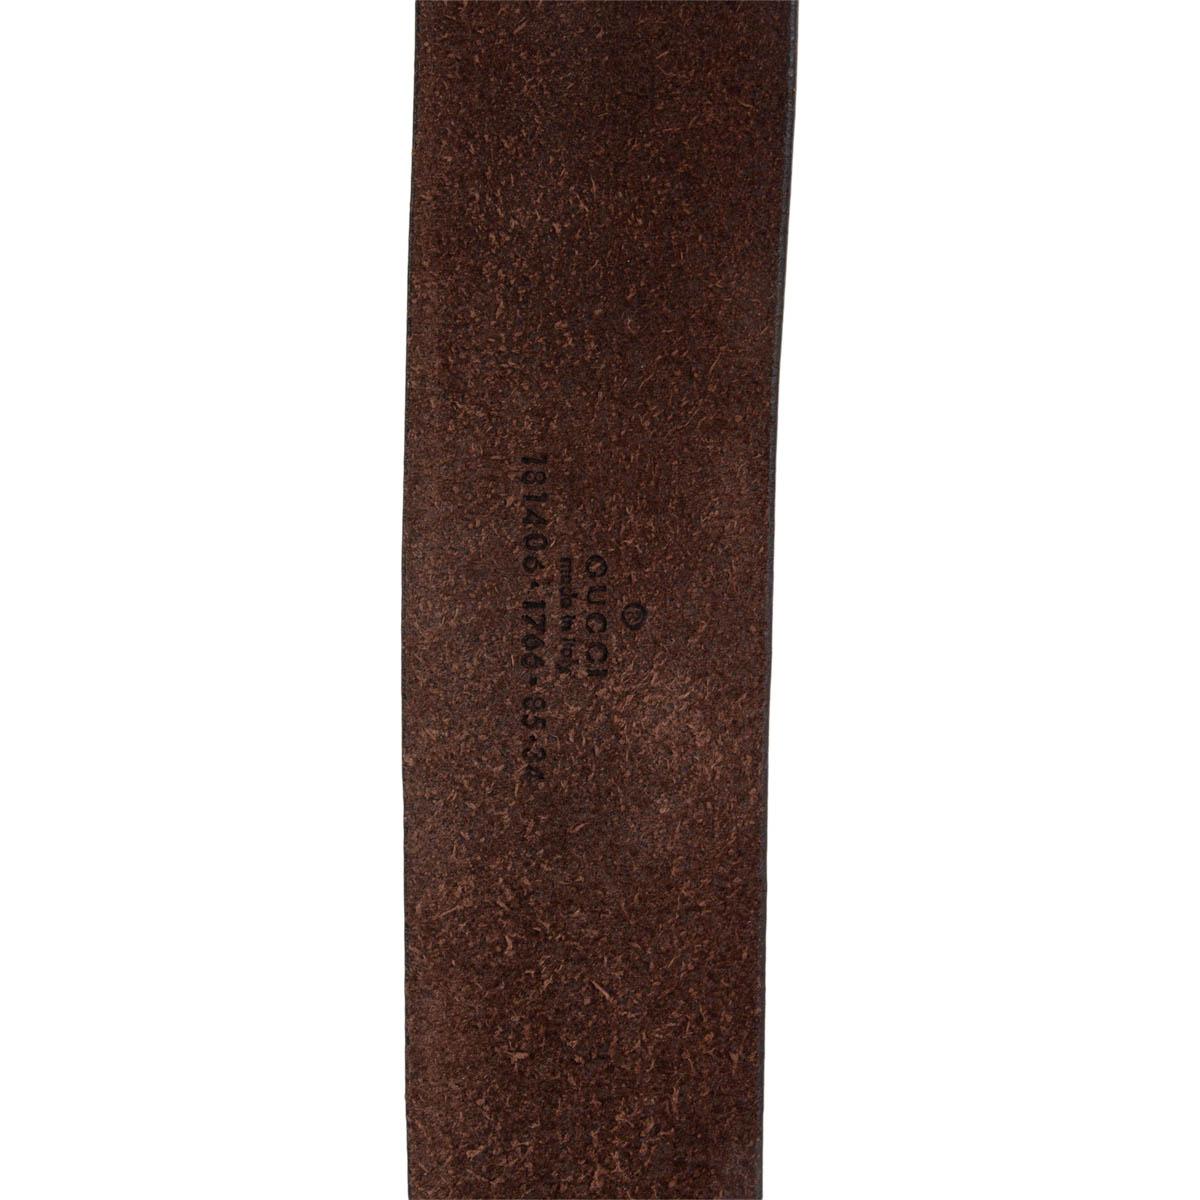 Black GUCCI dark brown leather ANTLER CREST Belt 85 / 34